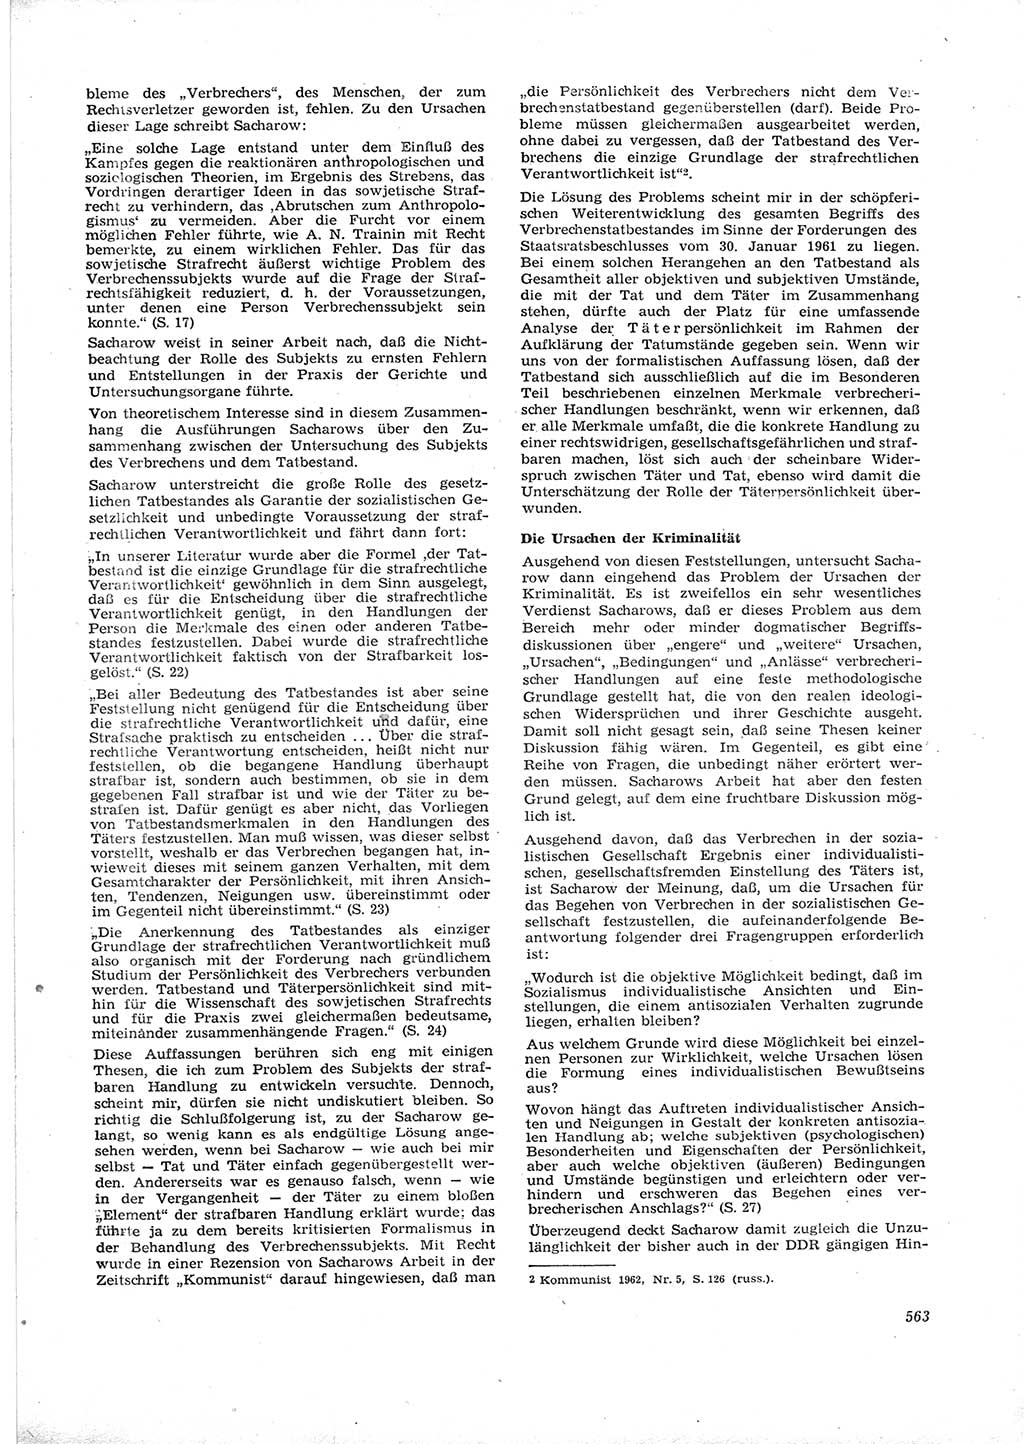 Neue Justiz (NJ), Zeitschrift für Recht und Rechtswissenschaft [Deutsche Demokratische Republik (DDR)], 16. Jahrgang 1962, Seite 563 (NJ DDR 1962, S. 563)